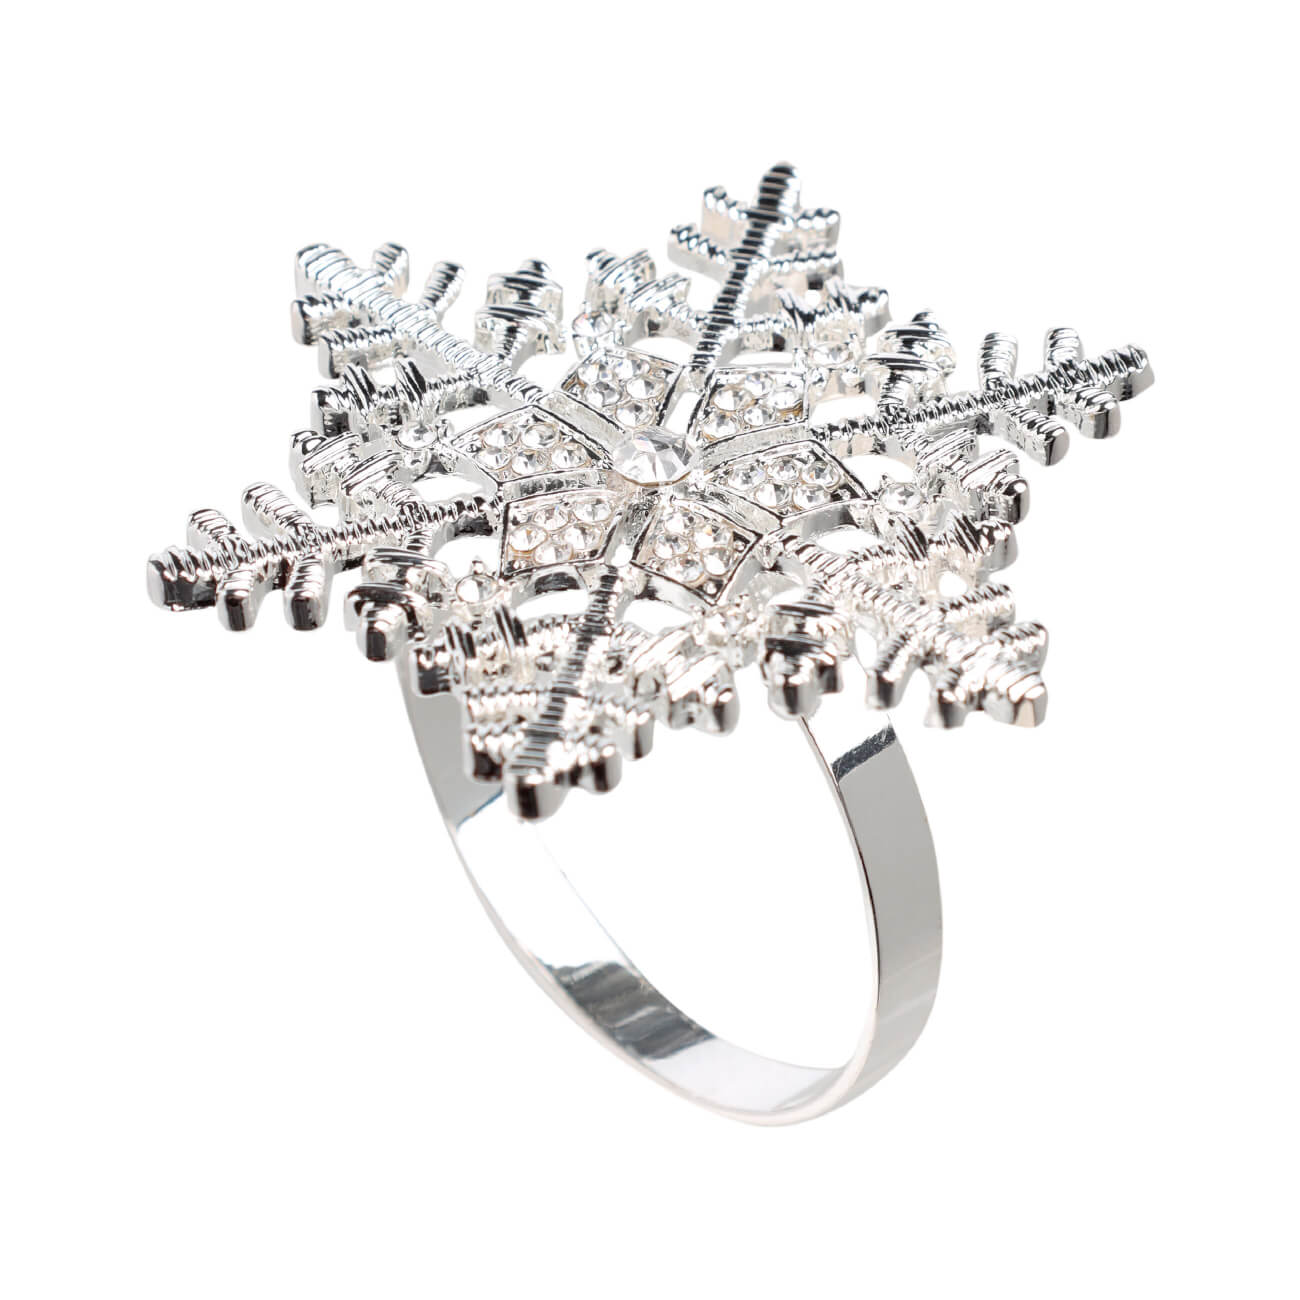 Кольцо для салфеток, 5 см, металл, серебристое, Снежинка, Snowfall кольцо